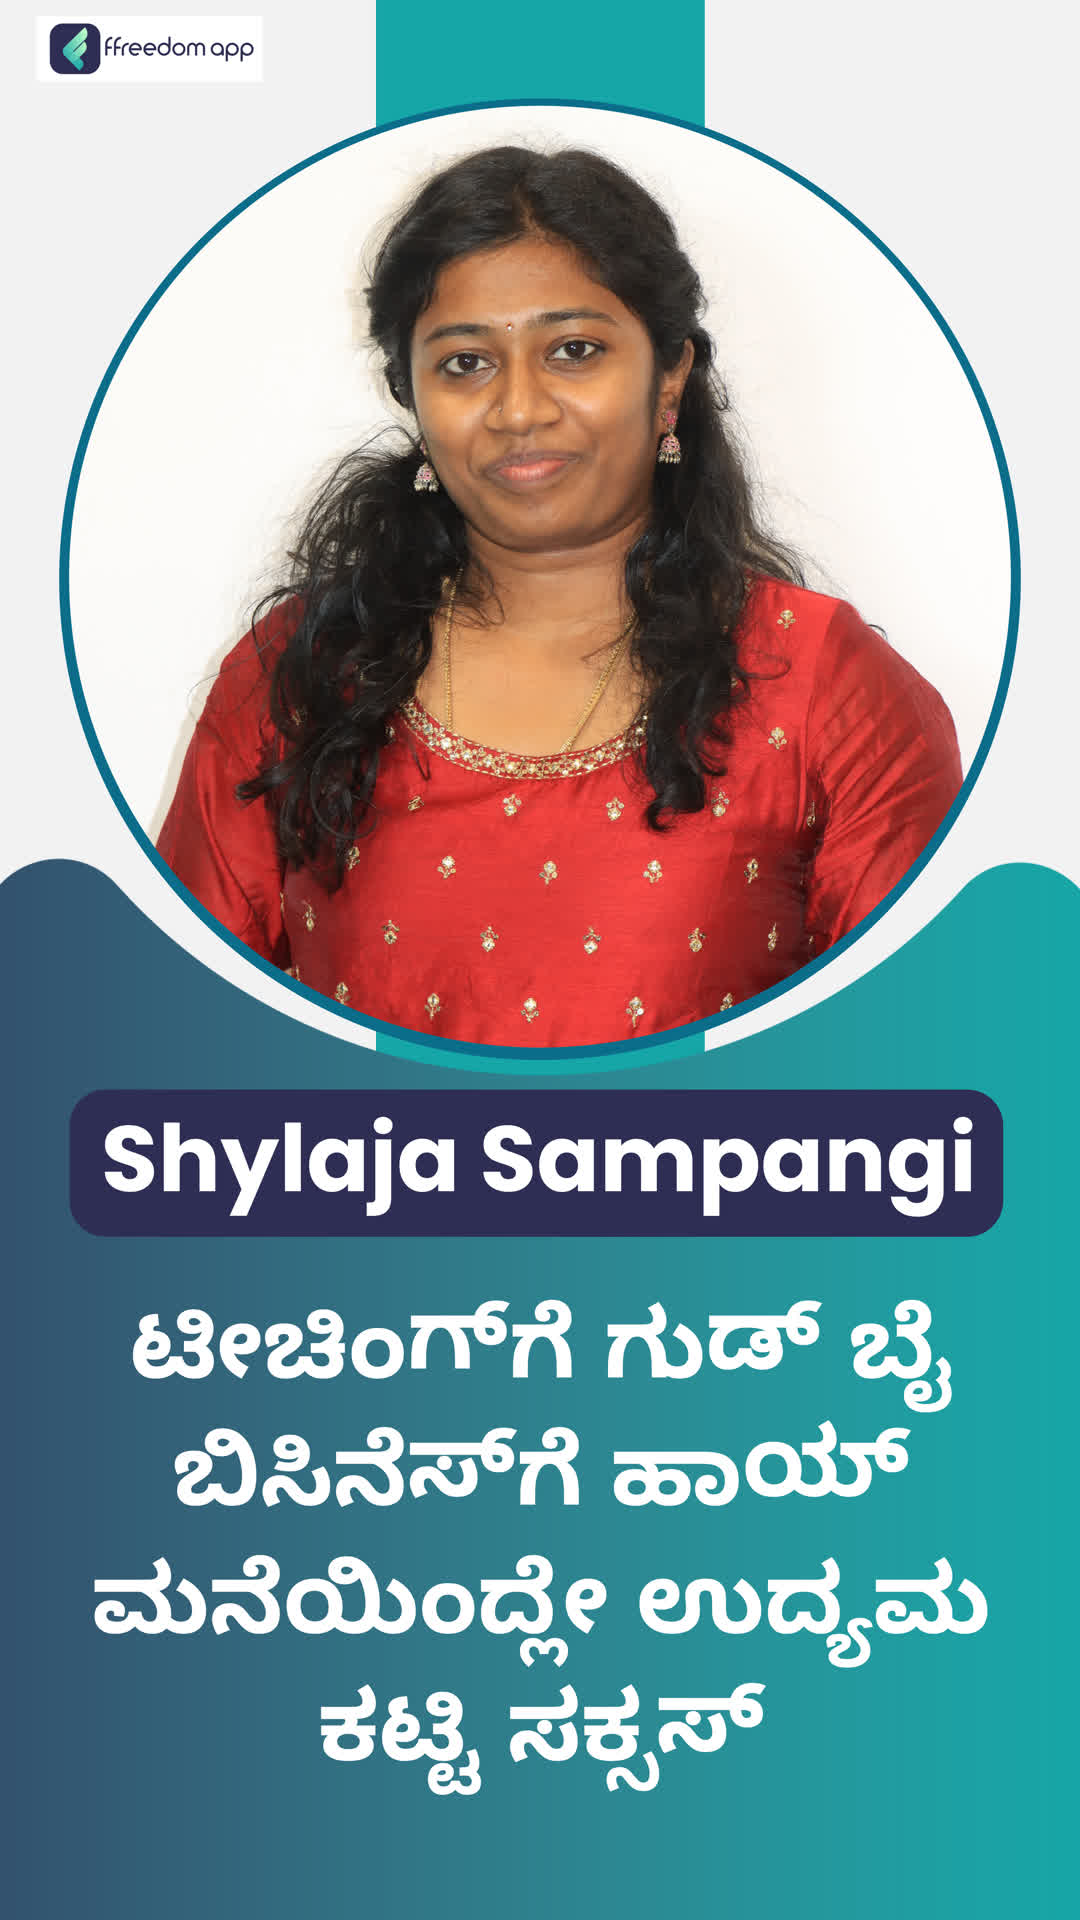 Shylashree g.m's Honest Review of ffreedom app - Mandya ,Karnataka